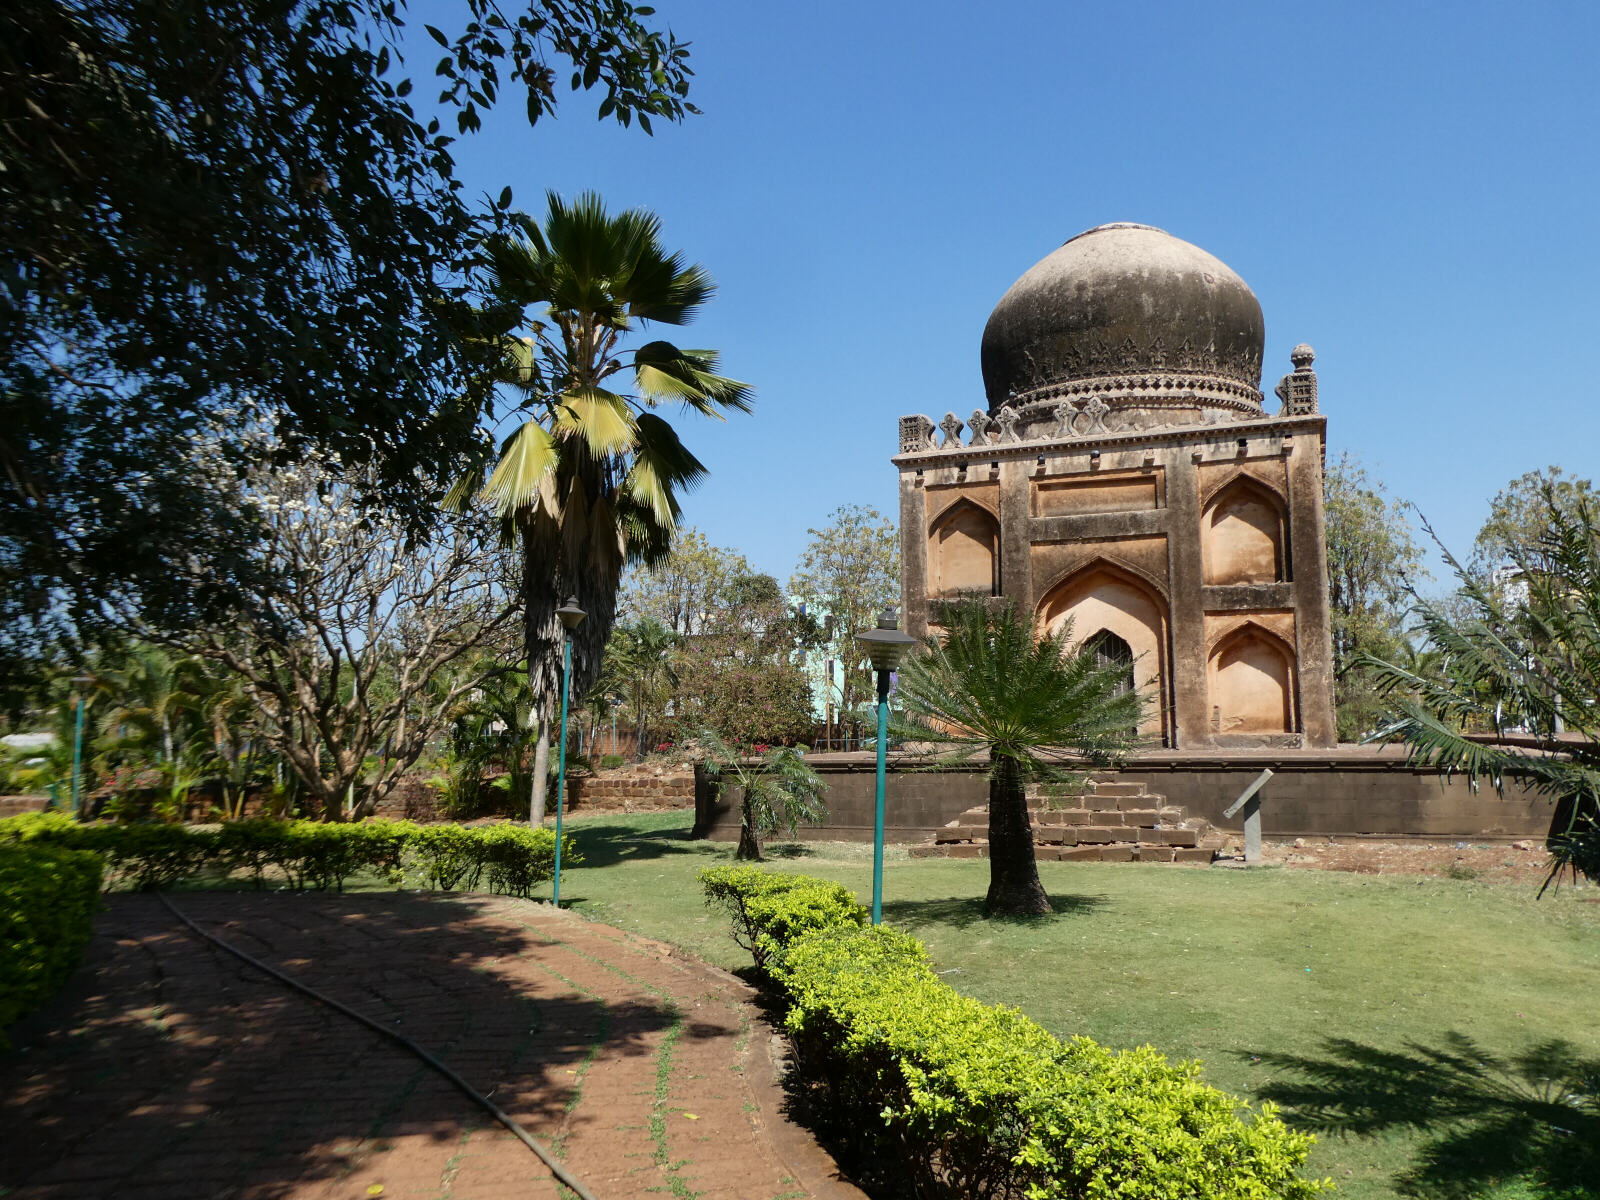 In the Barid Shah gardens in Bidar city, India